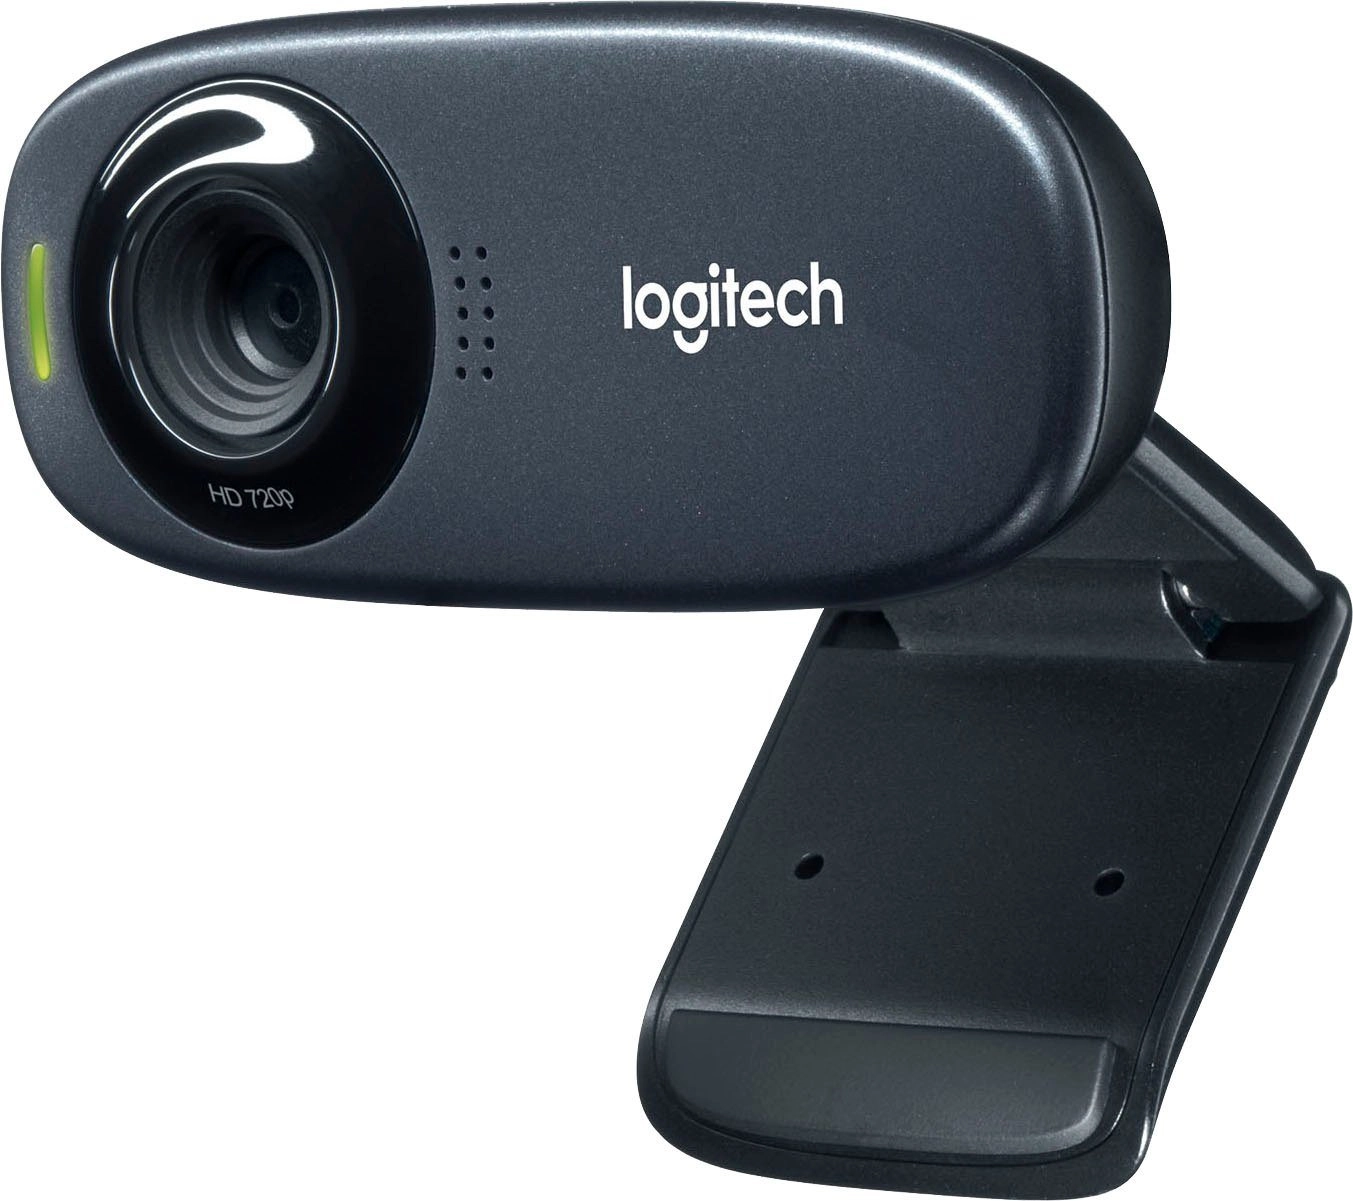 C310, Webcam